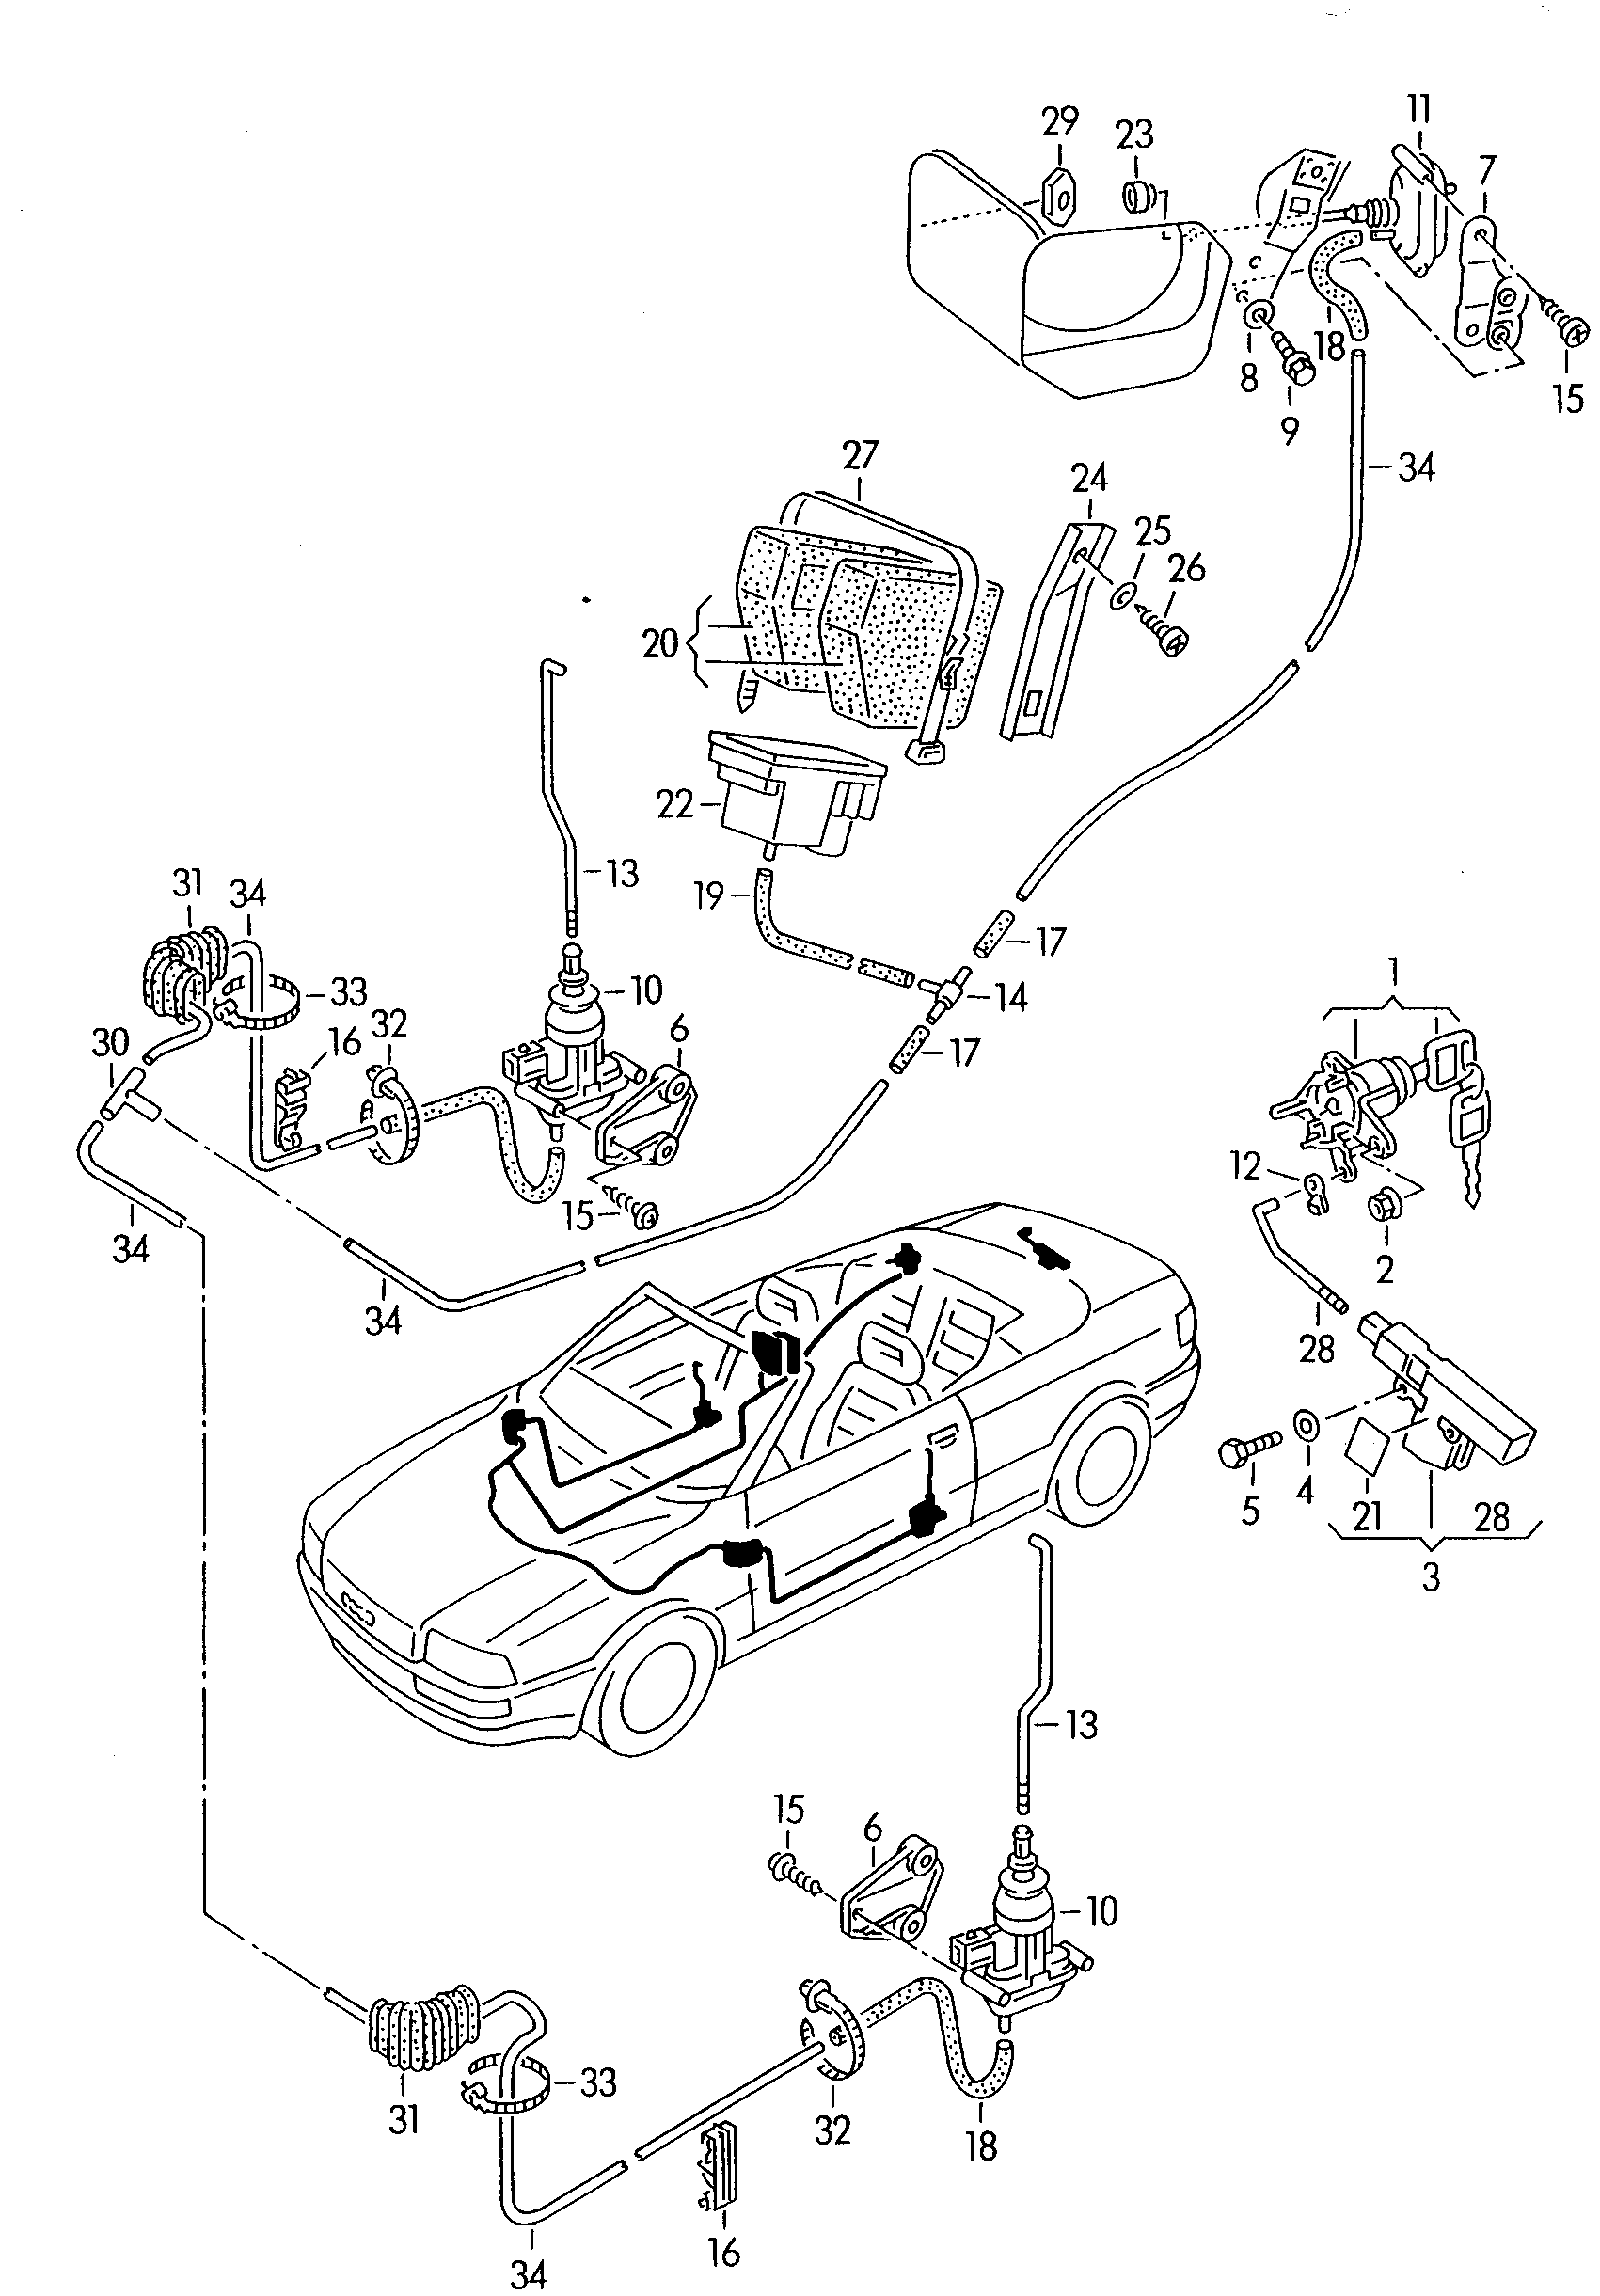 central locking system - Audi Cabriolet(ACA)  